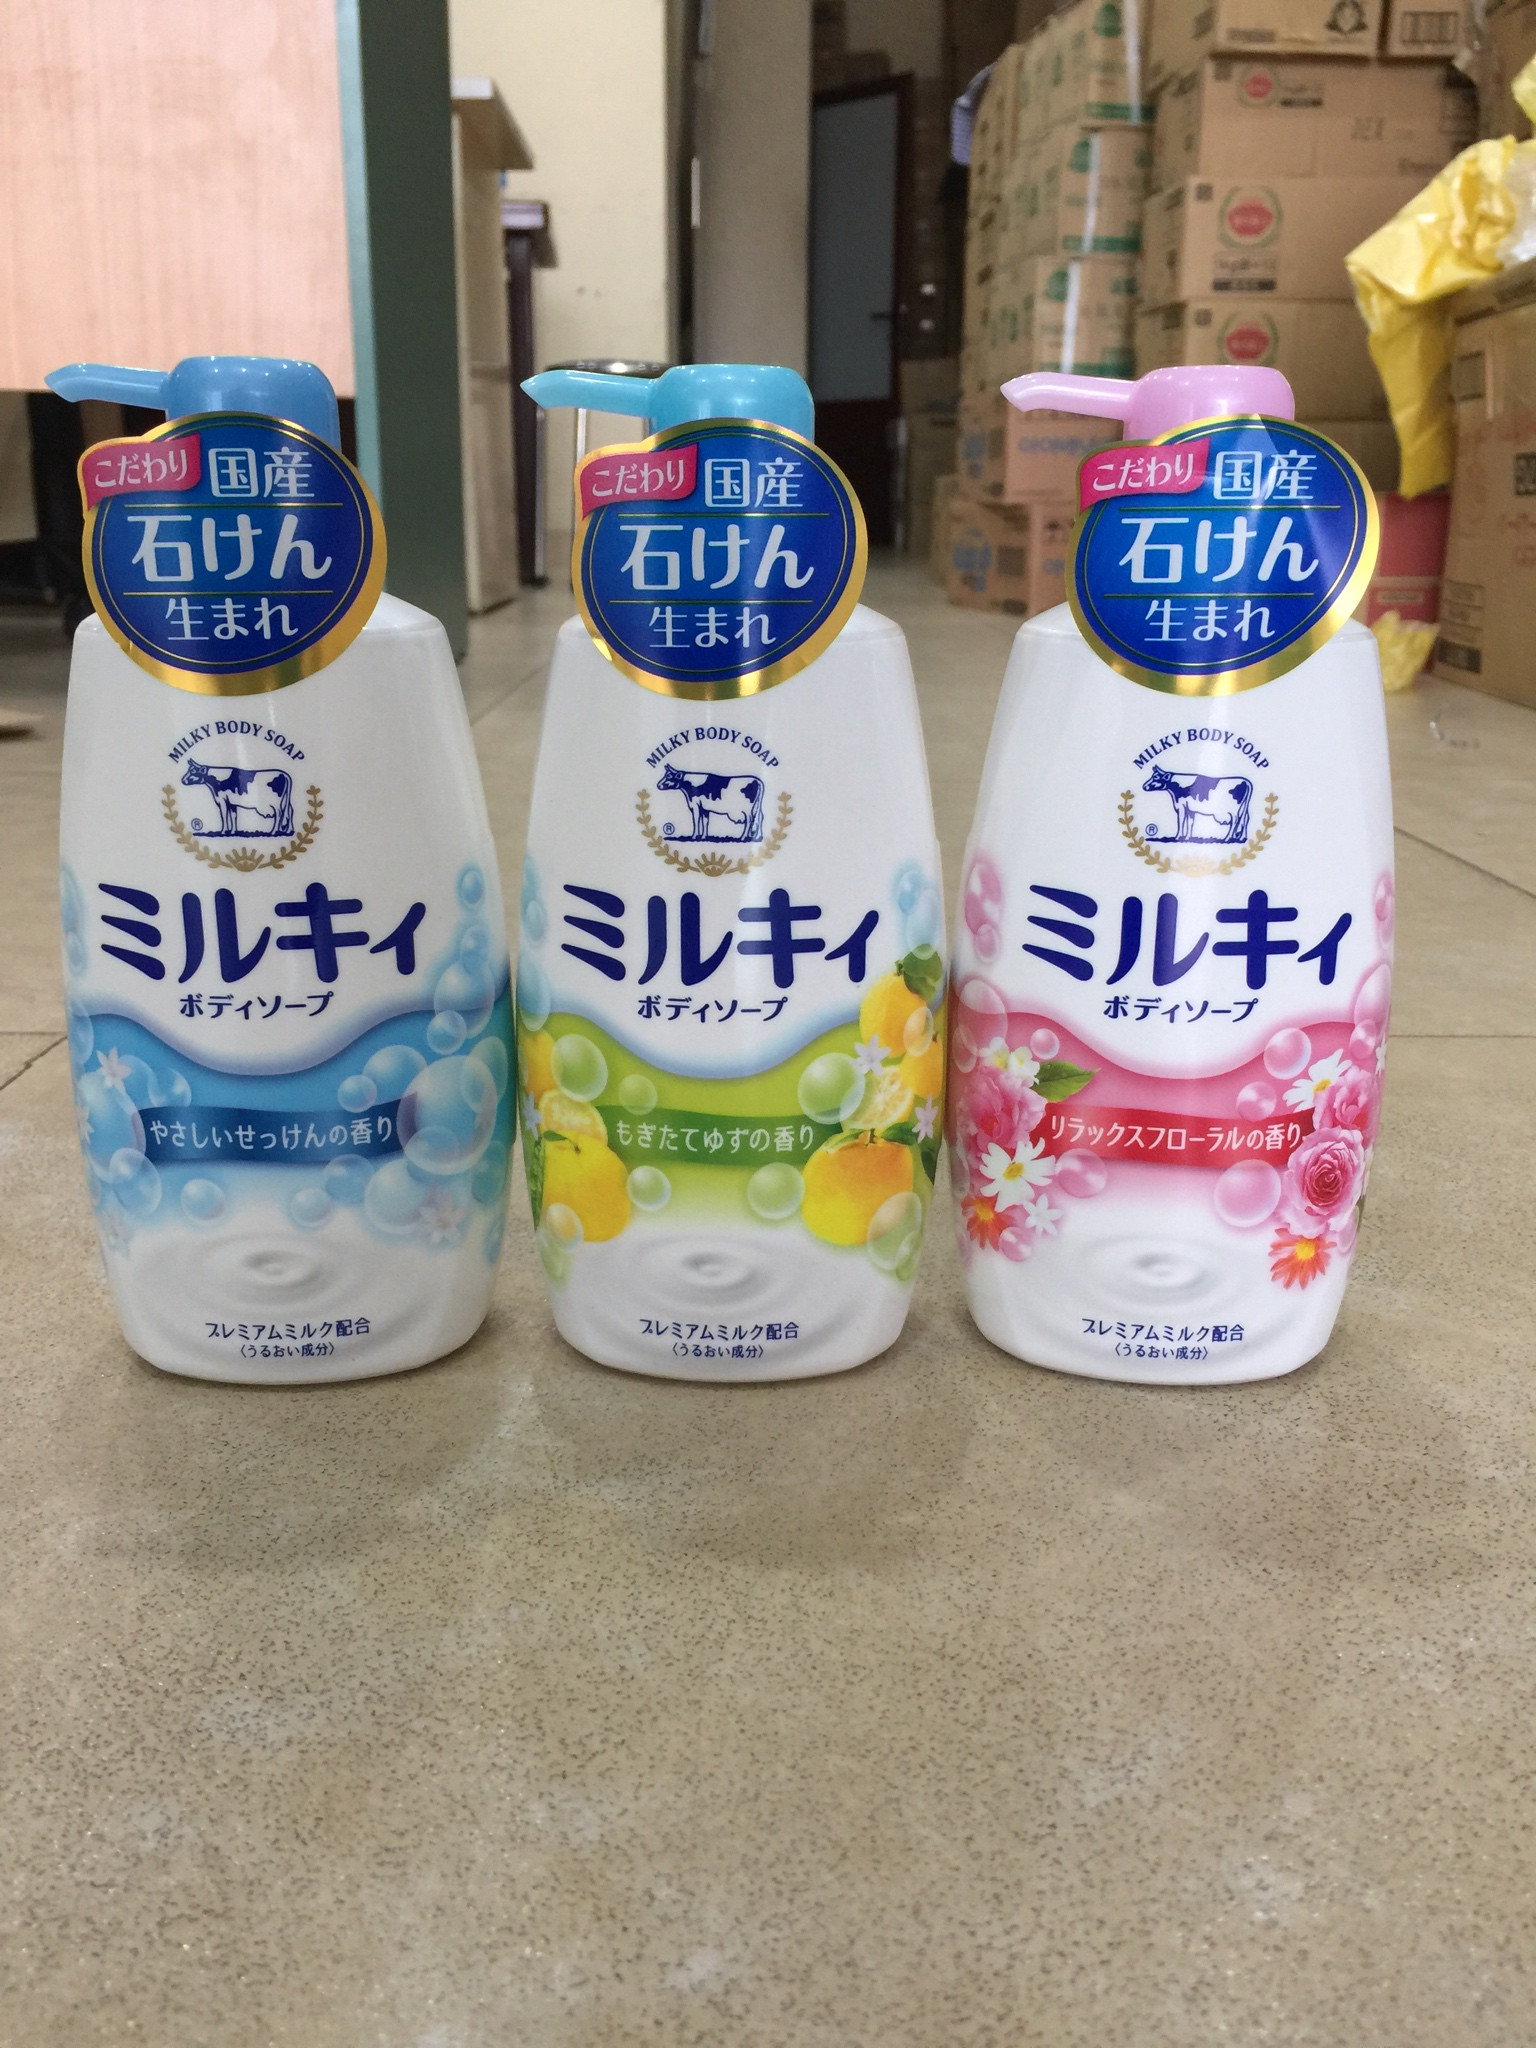 Sữa tắm bò Gyunyu Milky Body Soap 580ml Nhật Bản